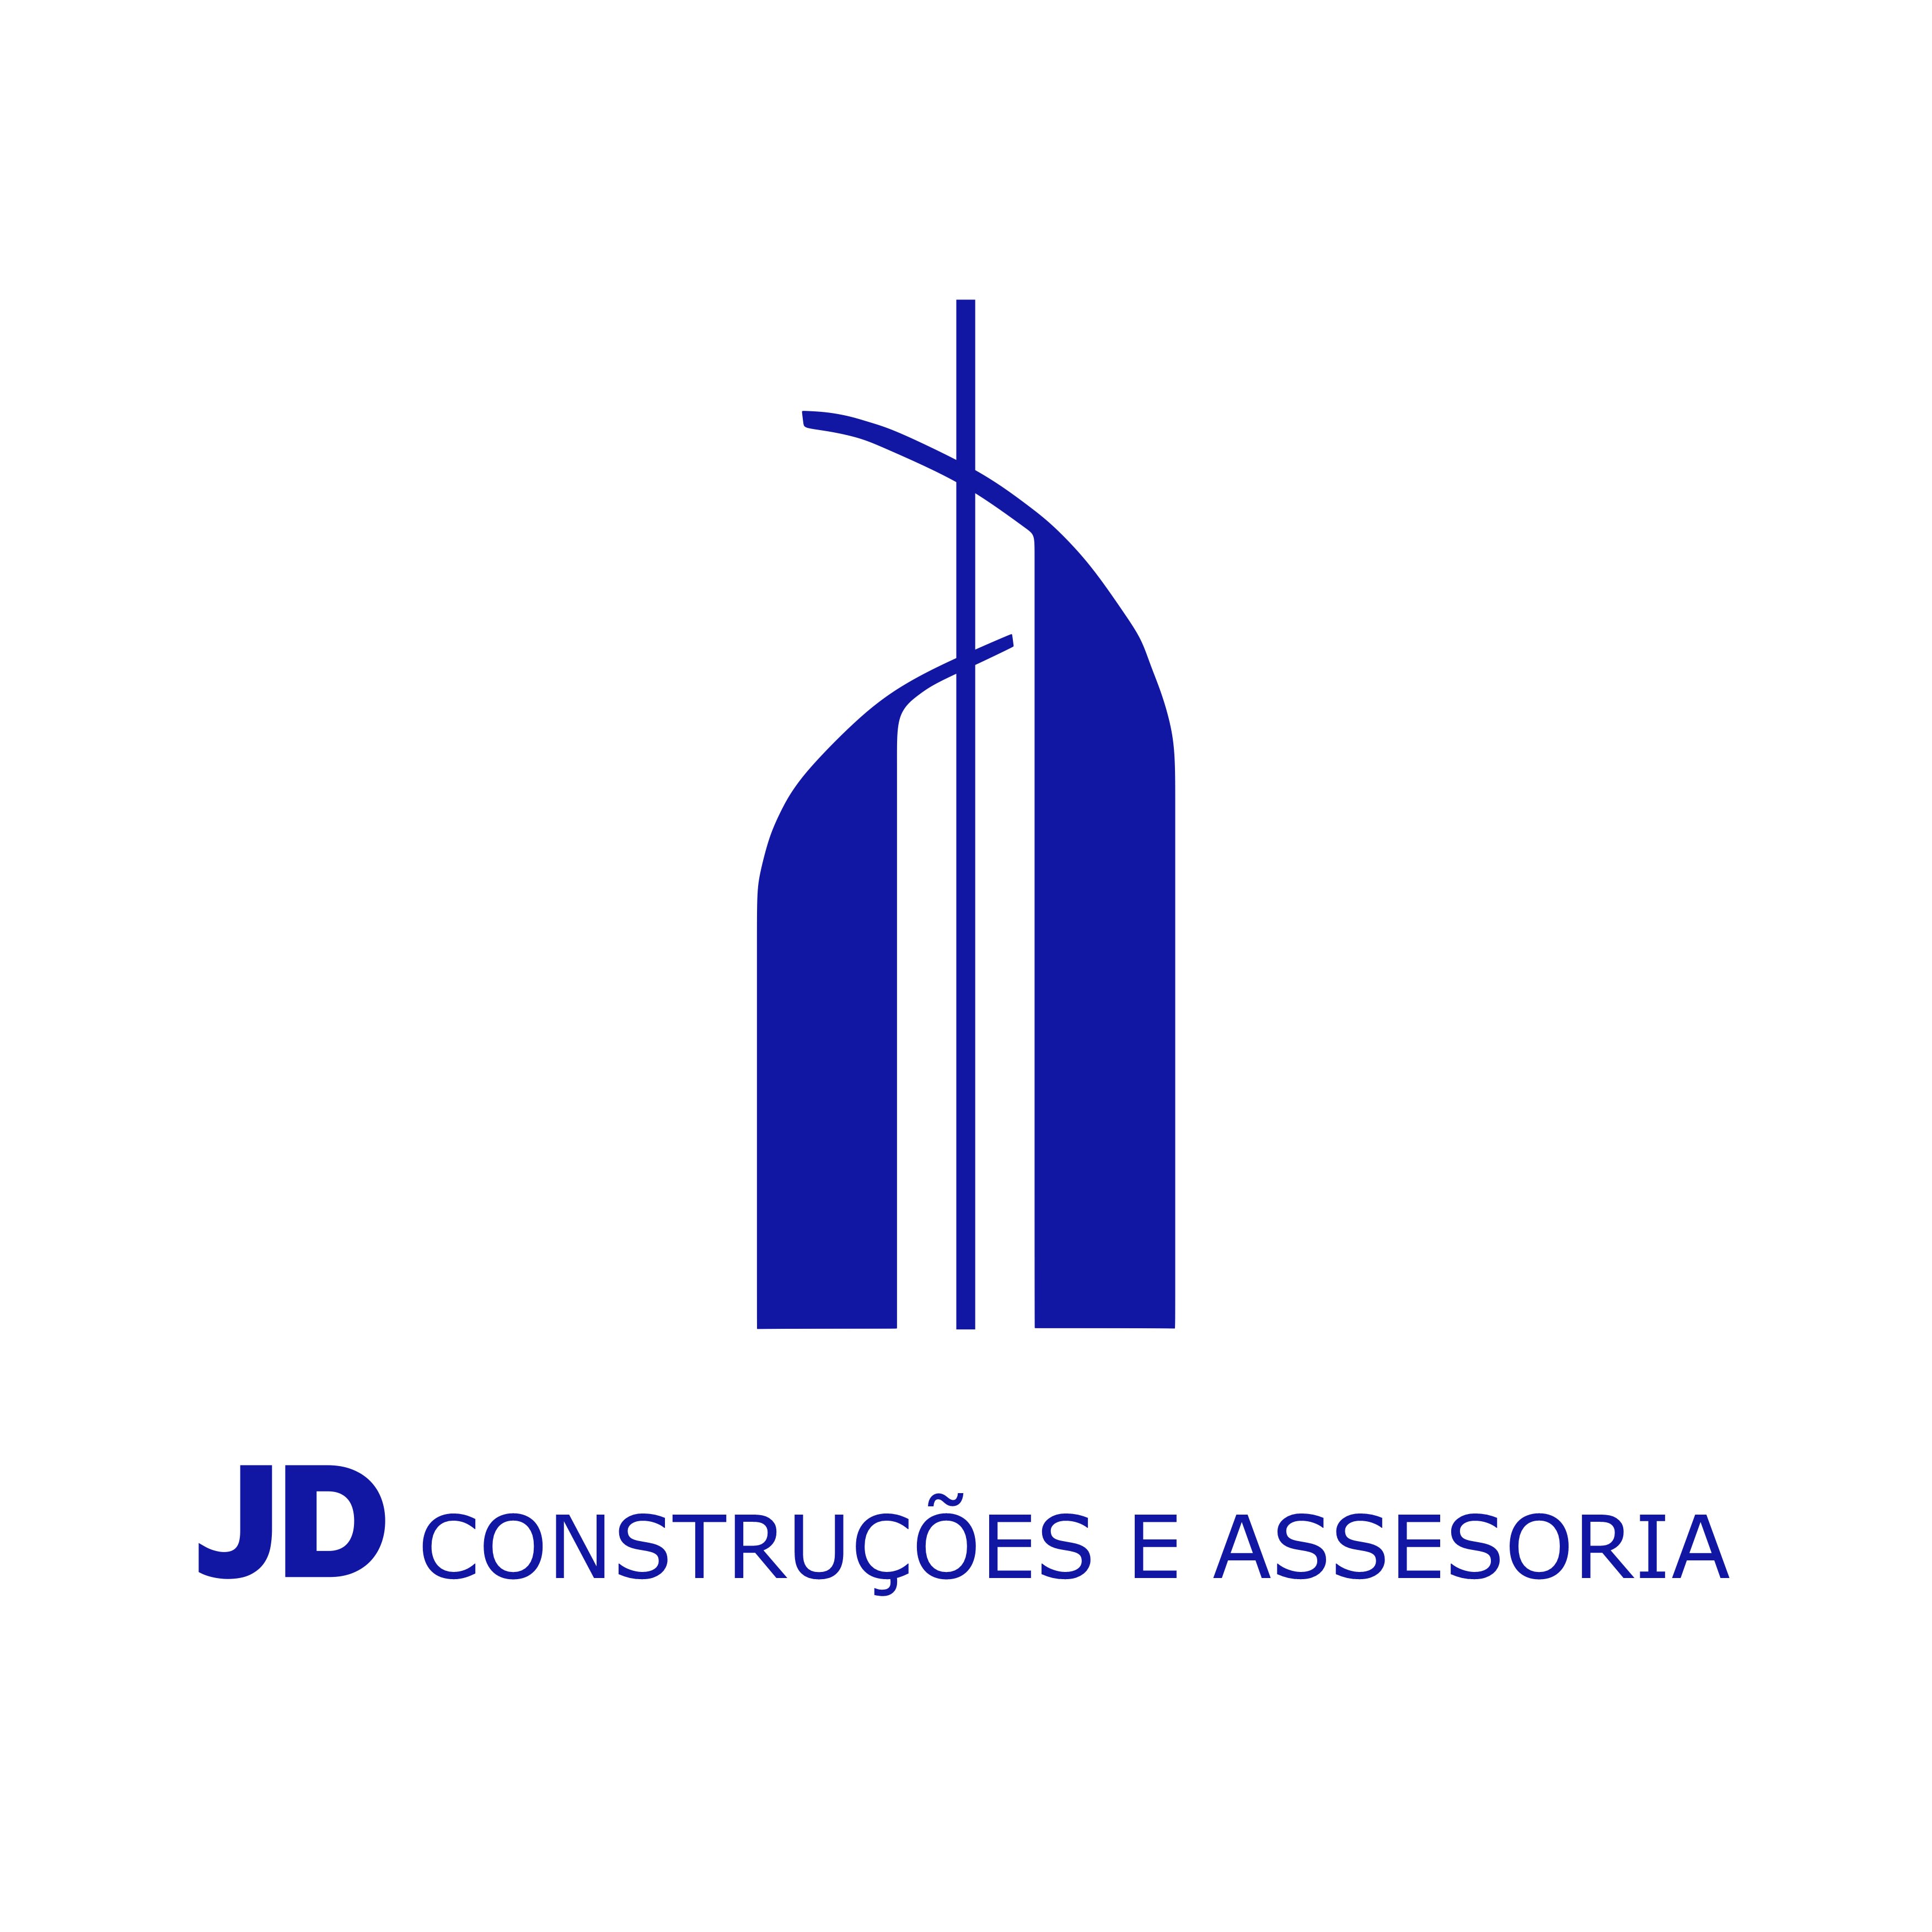 JD Construções & Assessoria